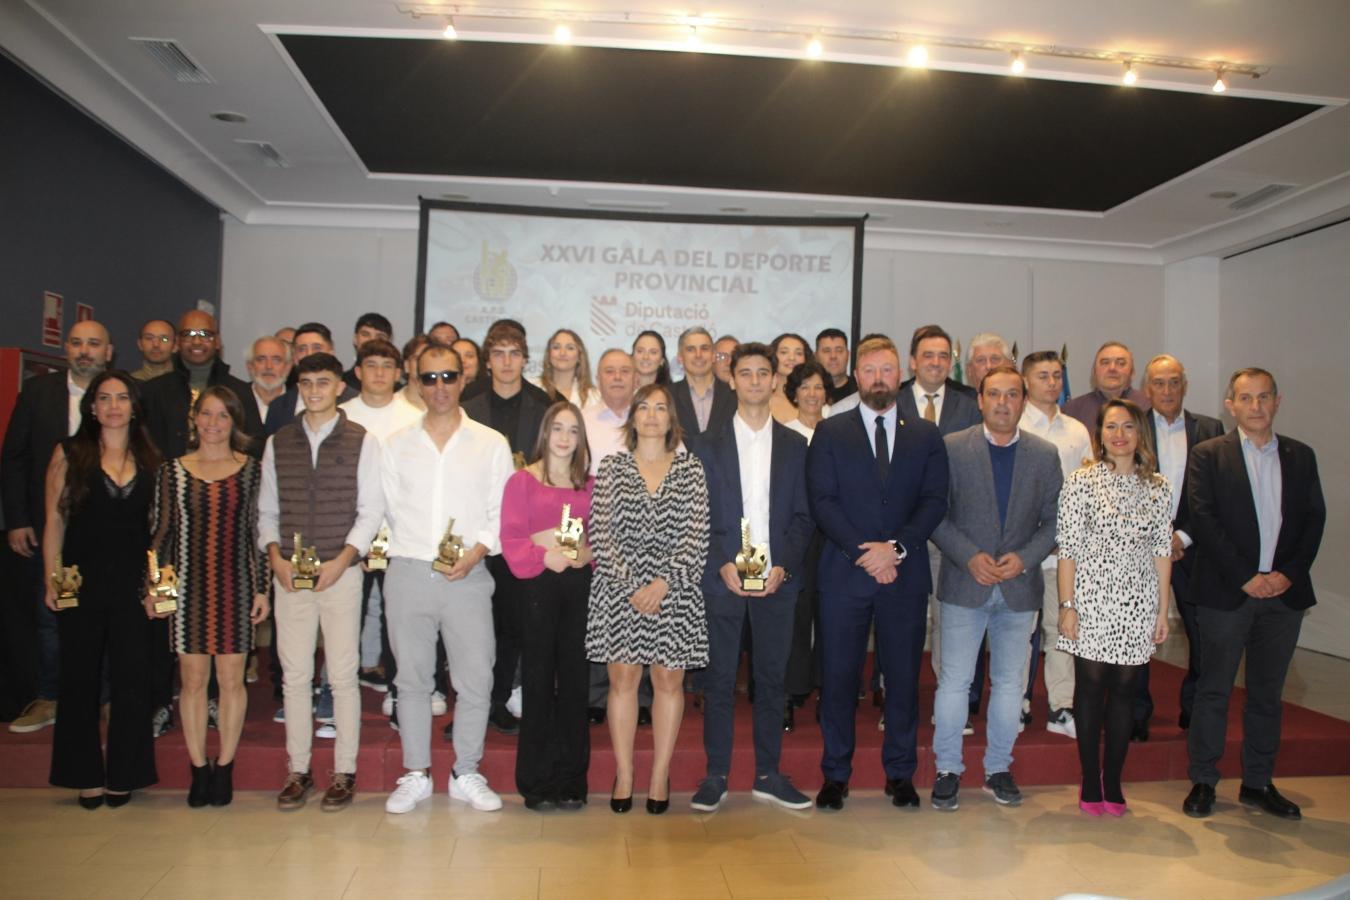 La Diputació de Castelló reconeix l'esforç i dedicació dels esportistes castellonencs en la XXVI Gala Provincial de l'Esport